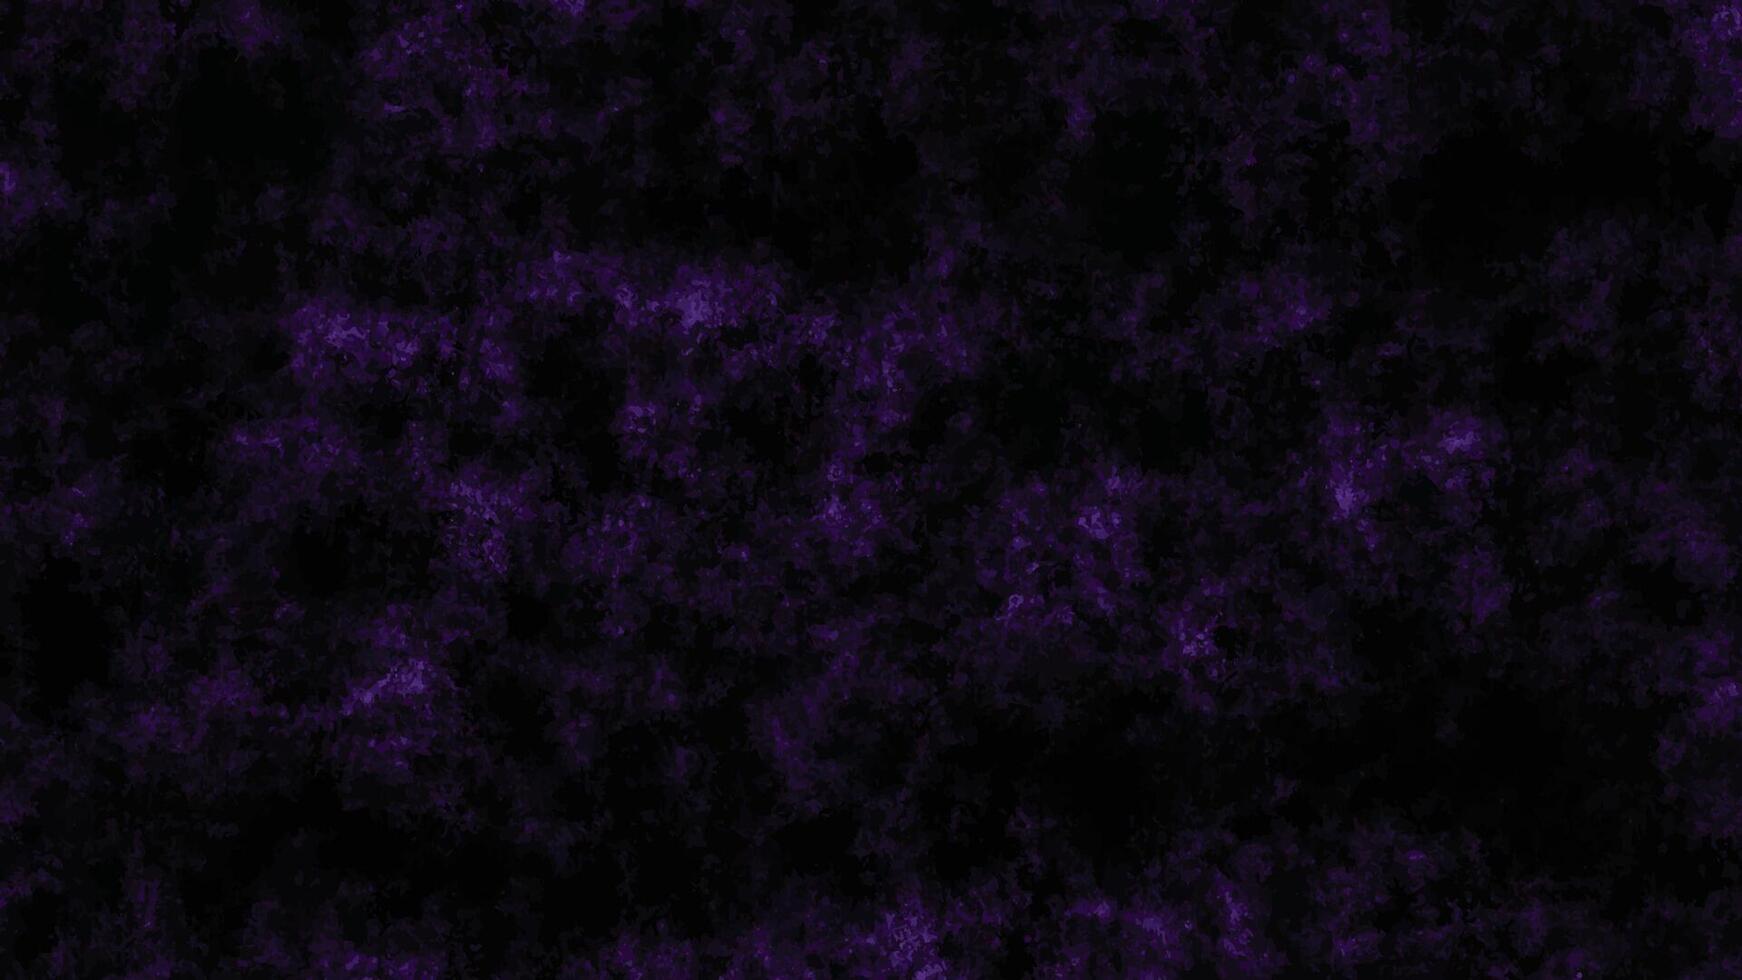 Scratch grunge urban background, distressed purple grunge texture on a dark background, vector